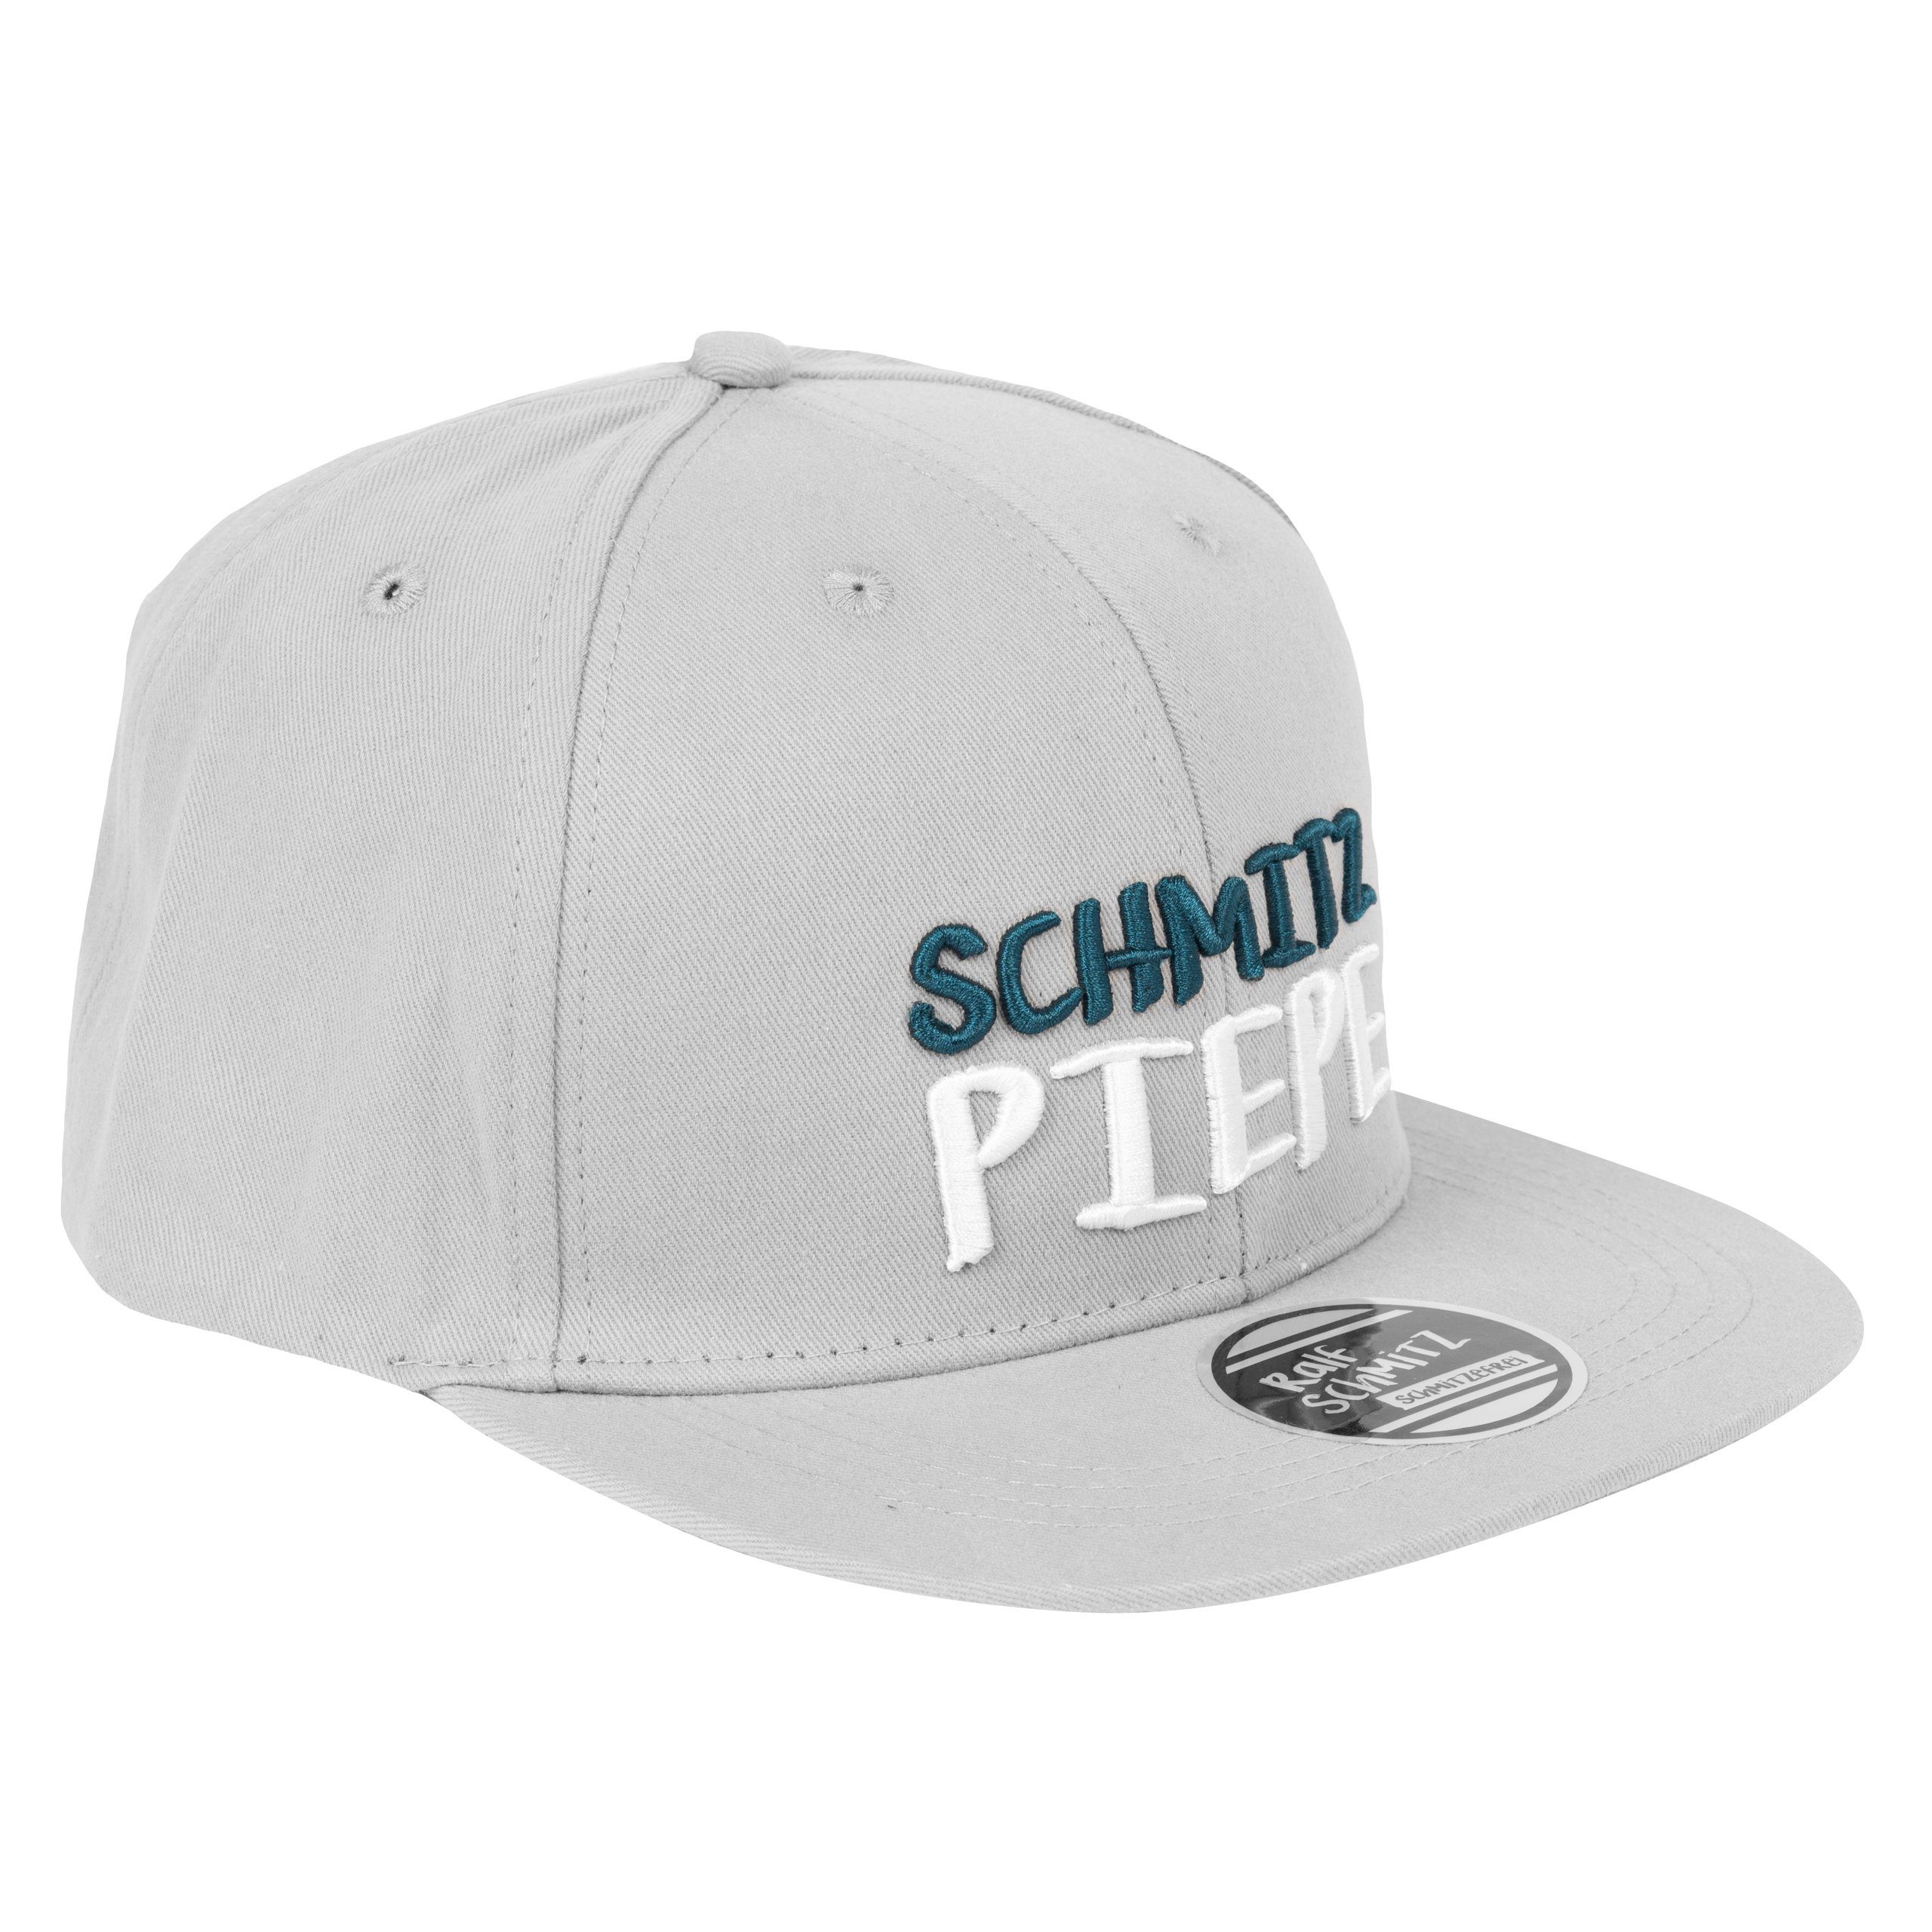 Schmitz United verstellbar Cap - Grau Ralf Schmitzpiepe Labels® Baseballkappe Baseball